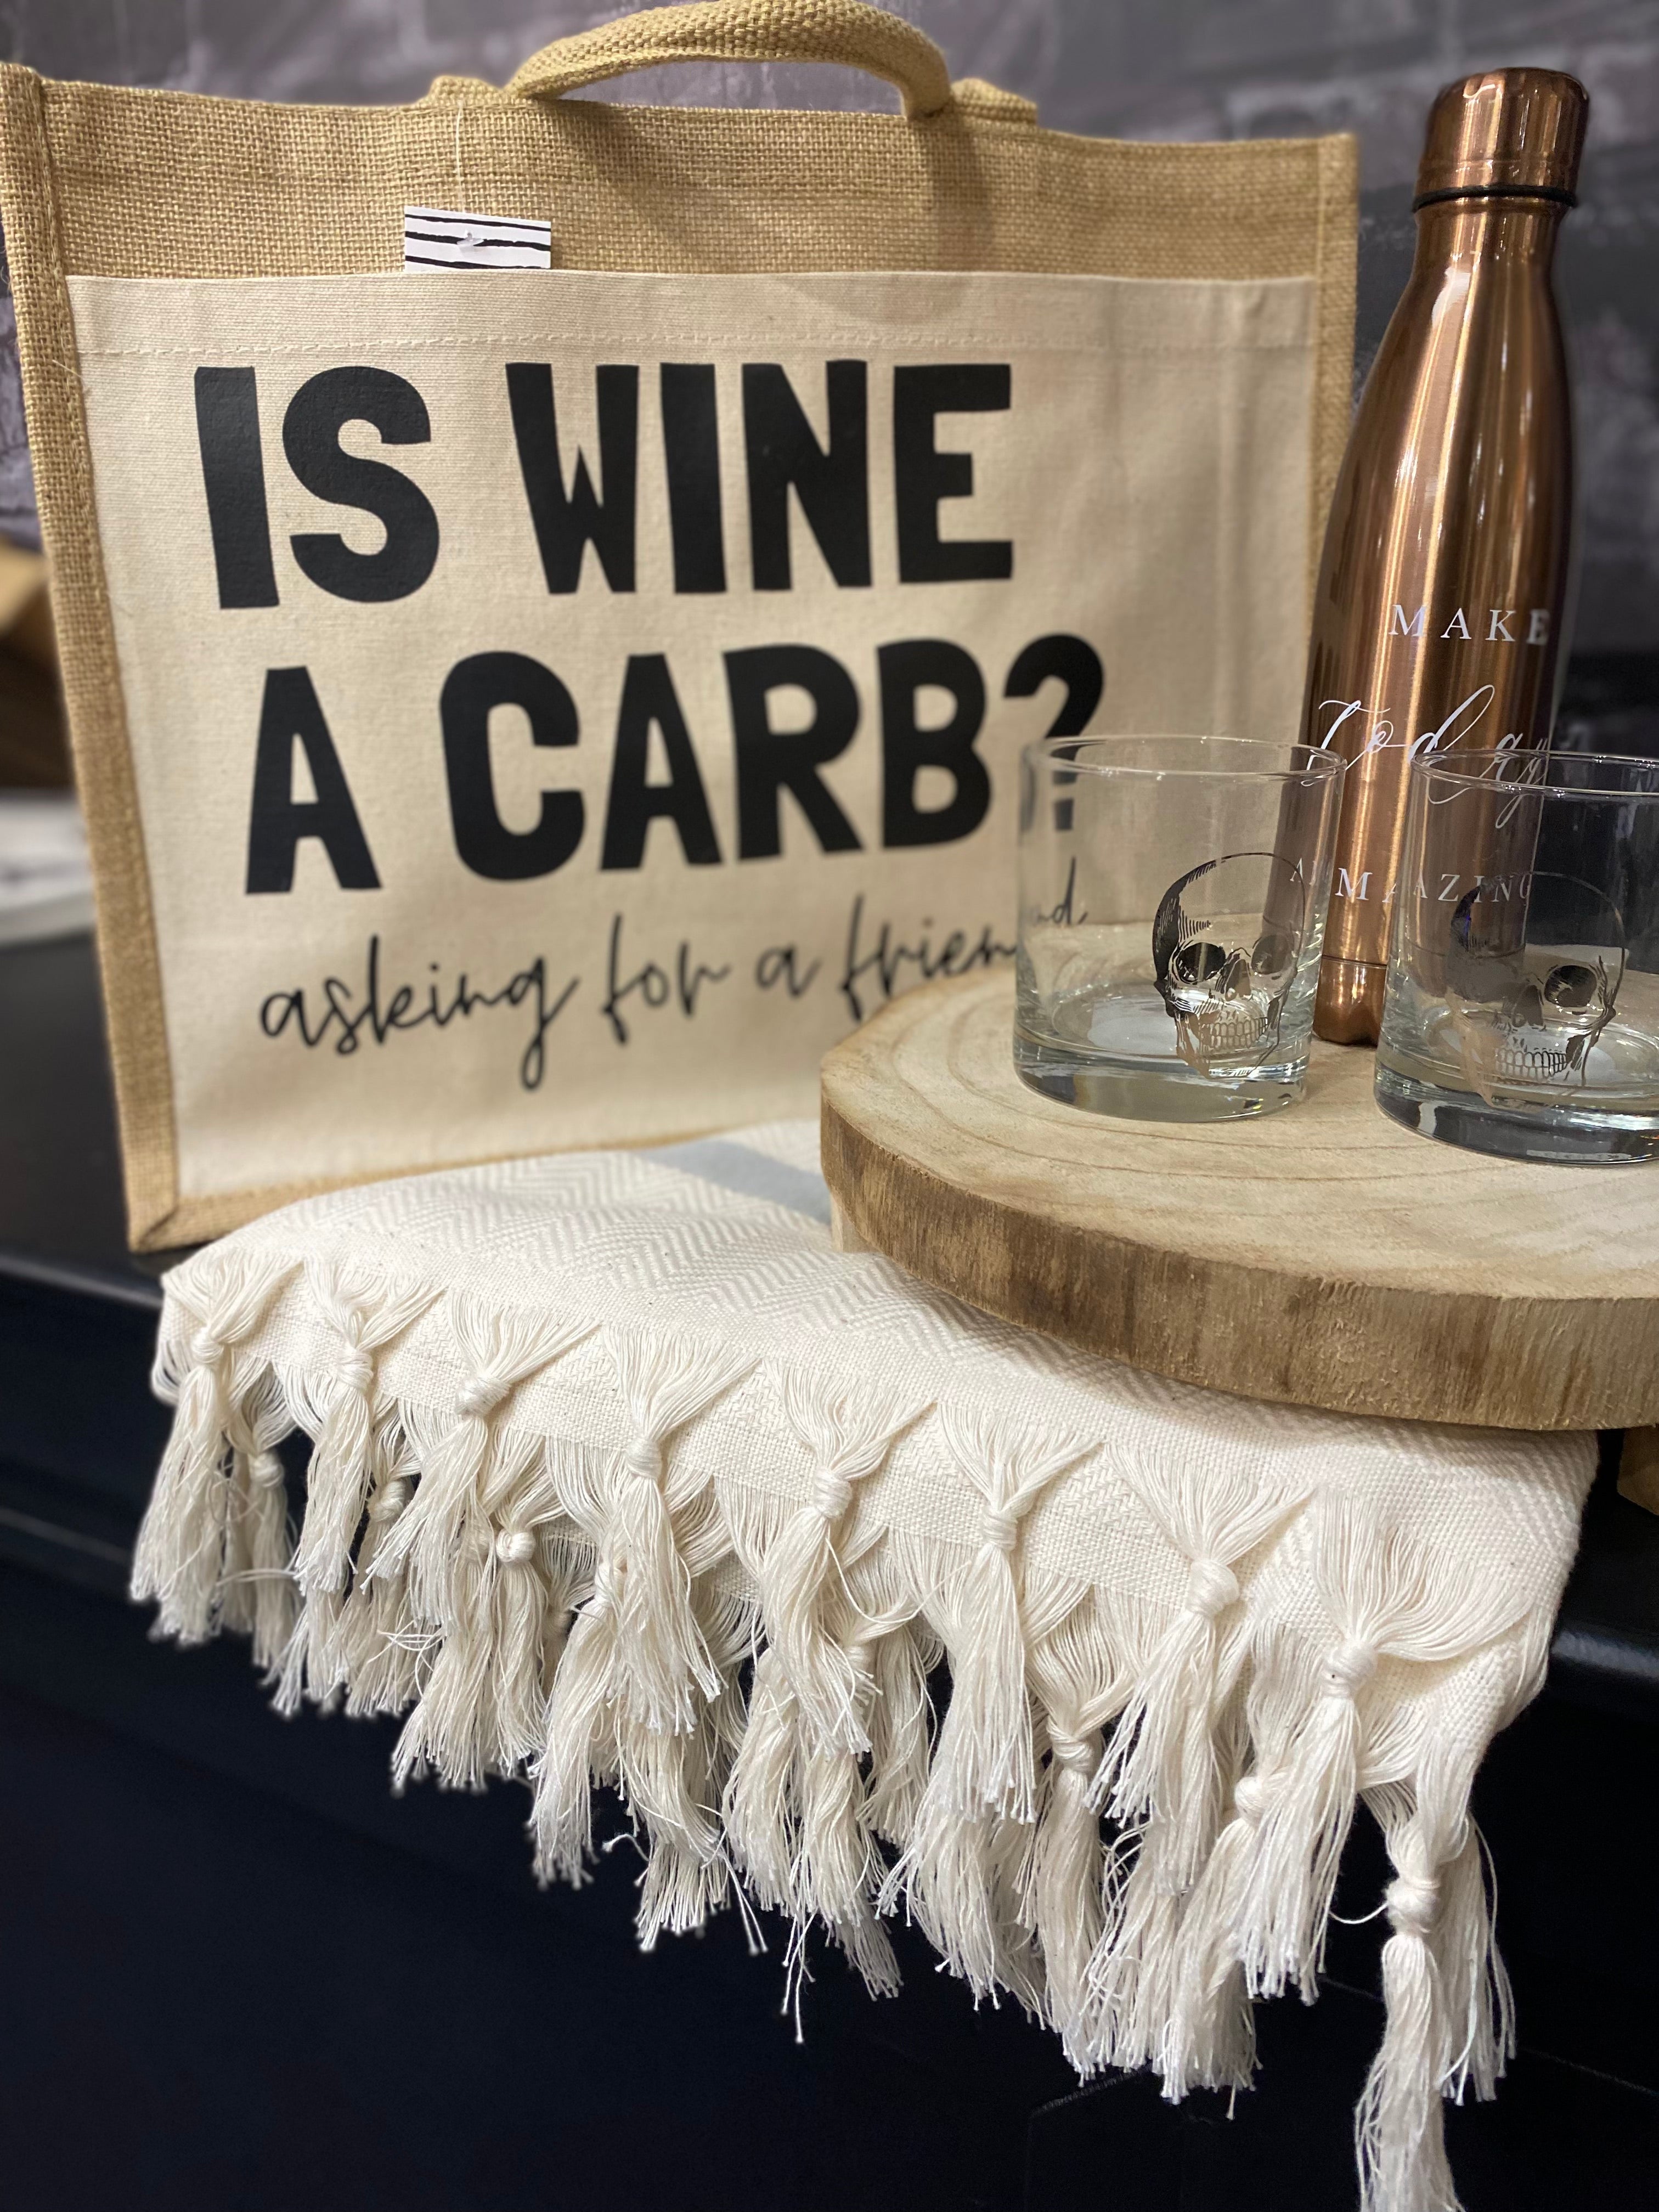 Is Wine A Carb? Jute Tote Bag - Medium displayed